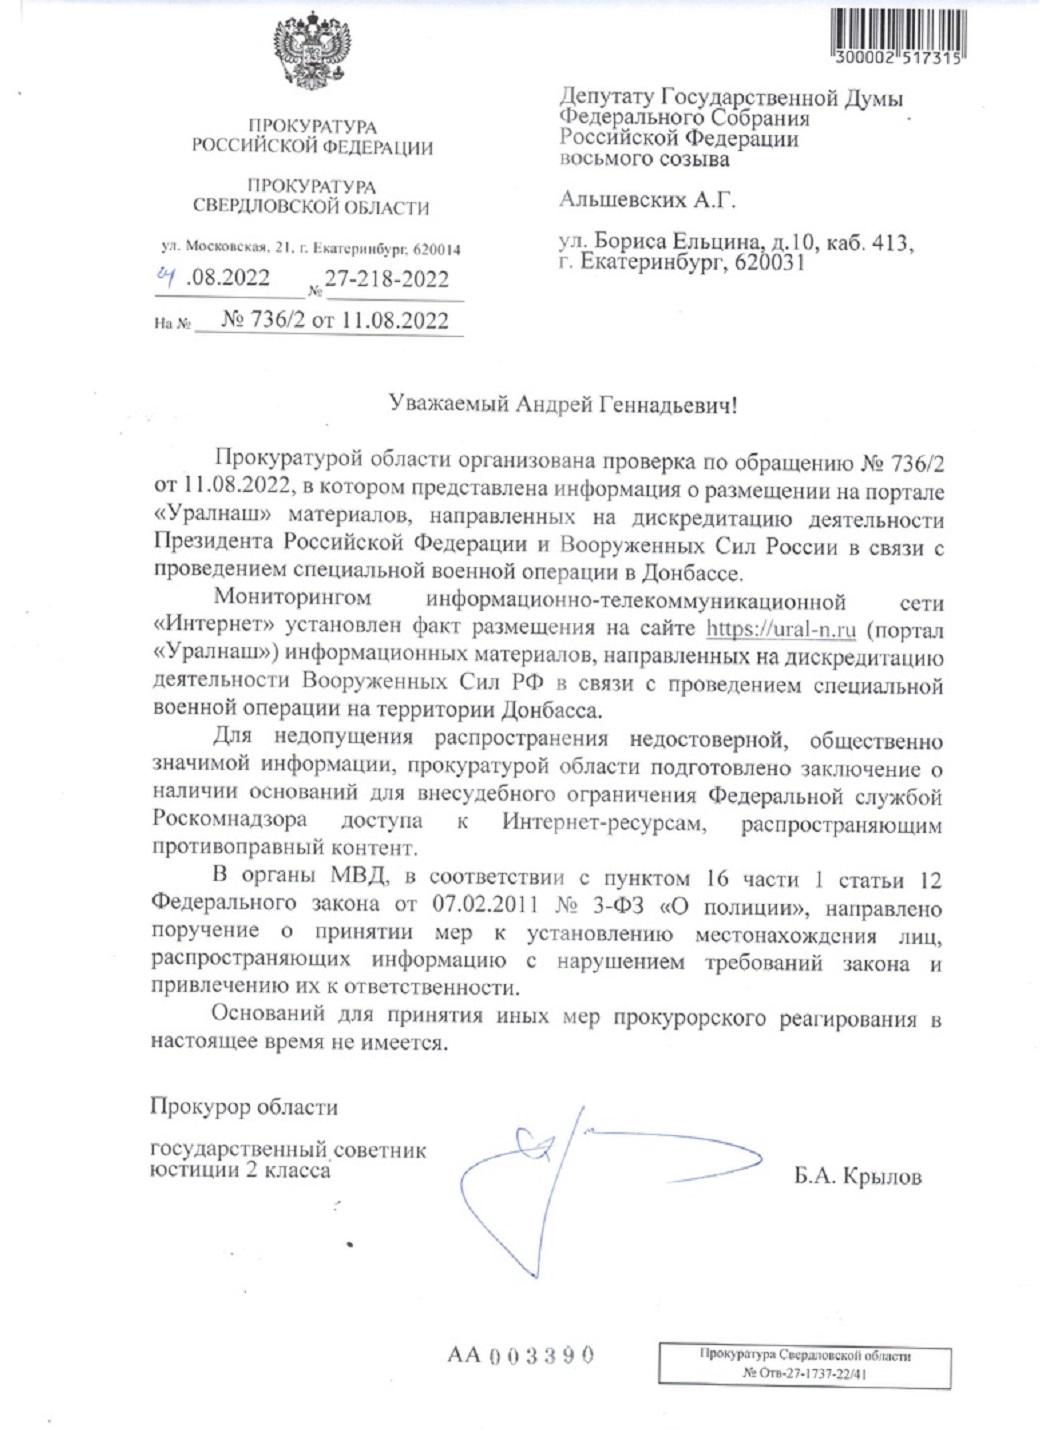 Депутат Госдумы потребовал заблокировать сайт «Уралнаш» за дискредитацию ВС РФ